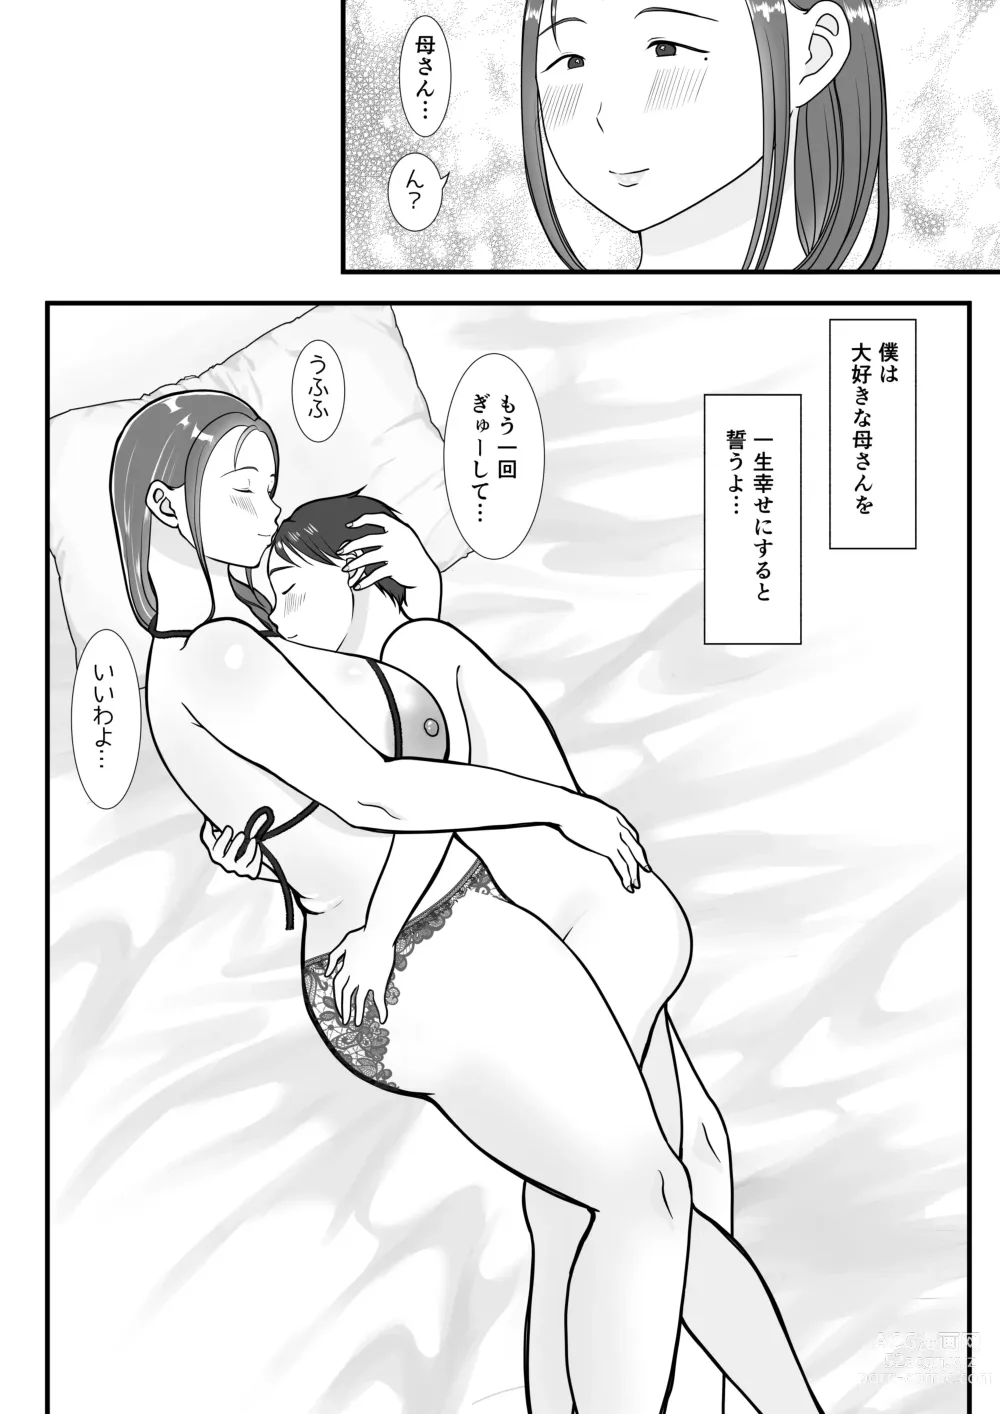 Page 72 of doujinshi Boku wa Haha ni Gachikoi Shiteru 1